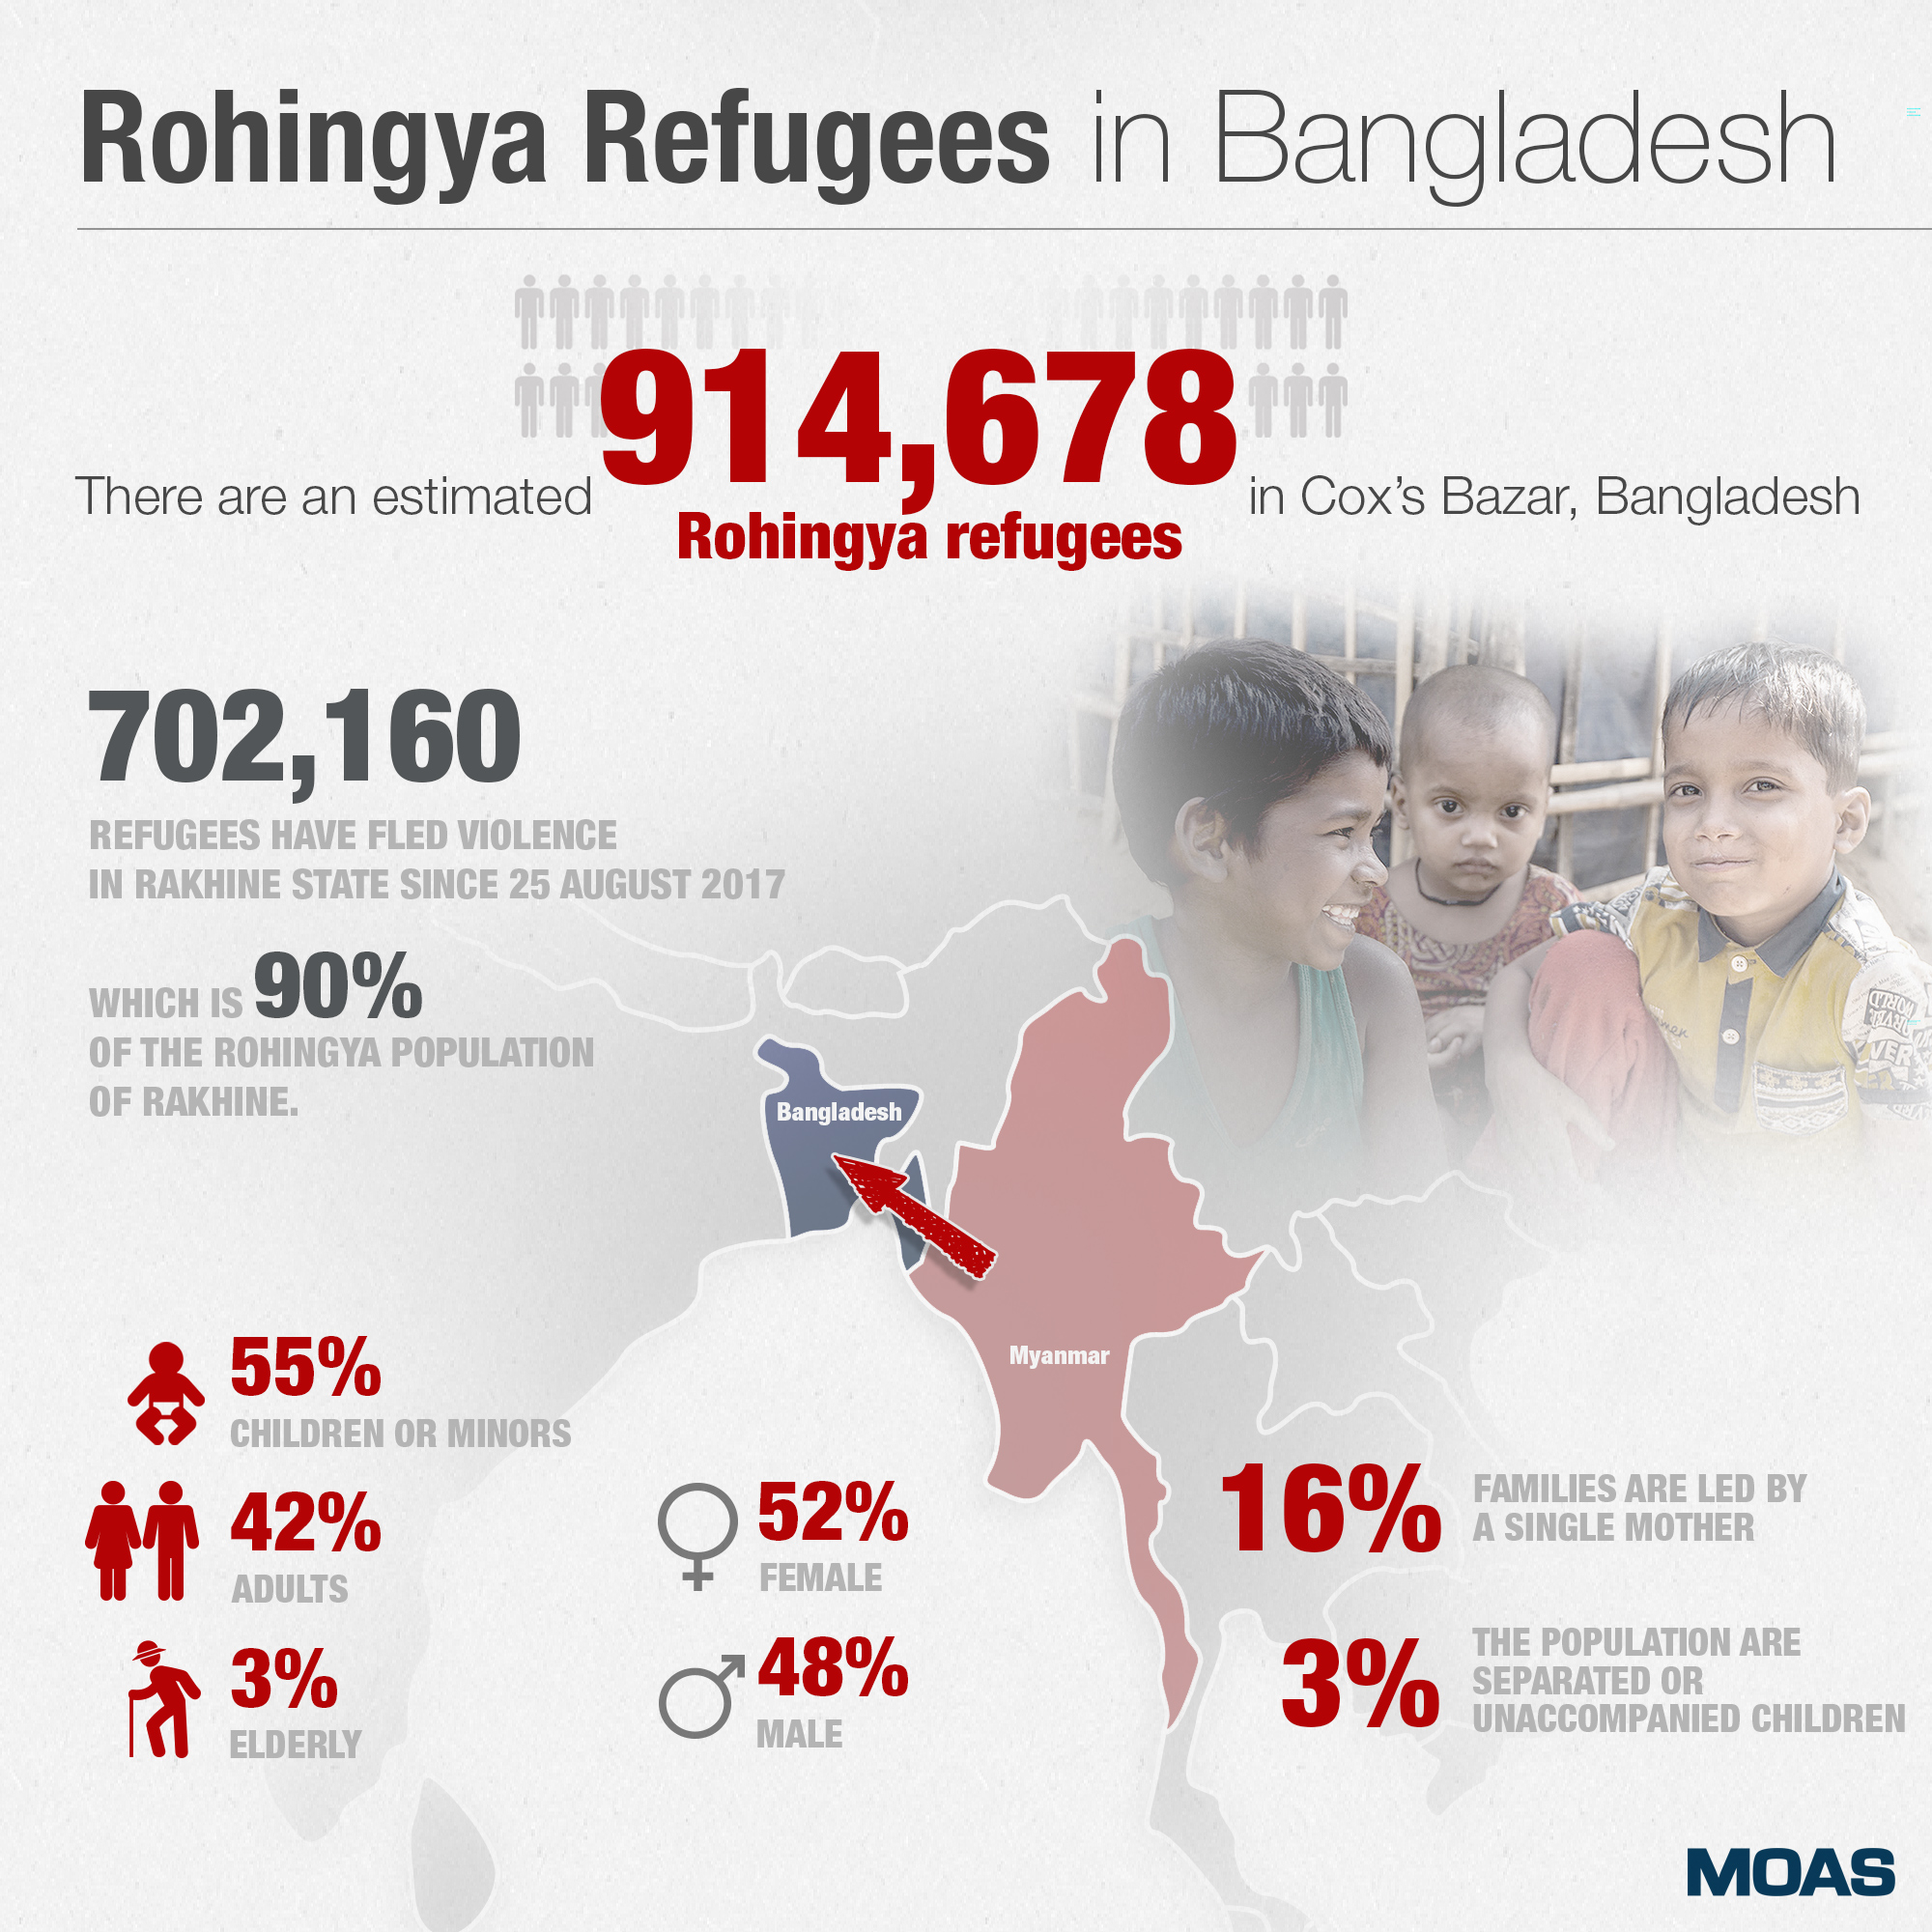 Rohingya-Refugees-in-Bangladesh—INFOGRAPHIC-01 (1)